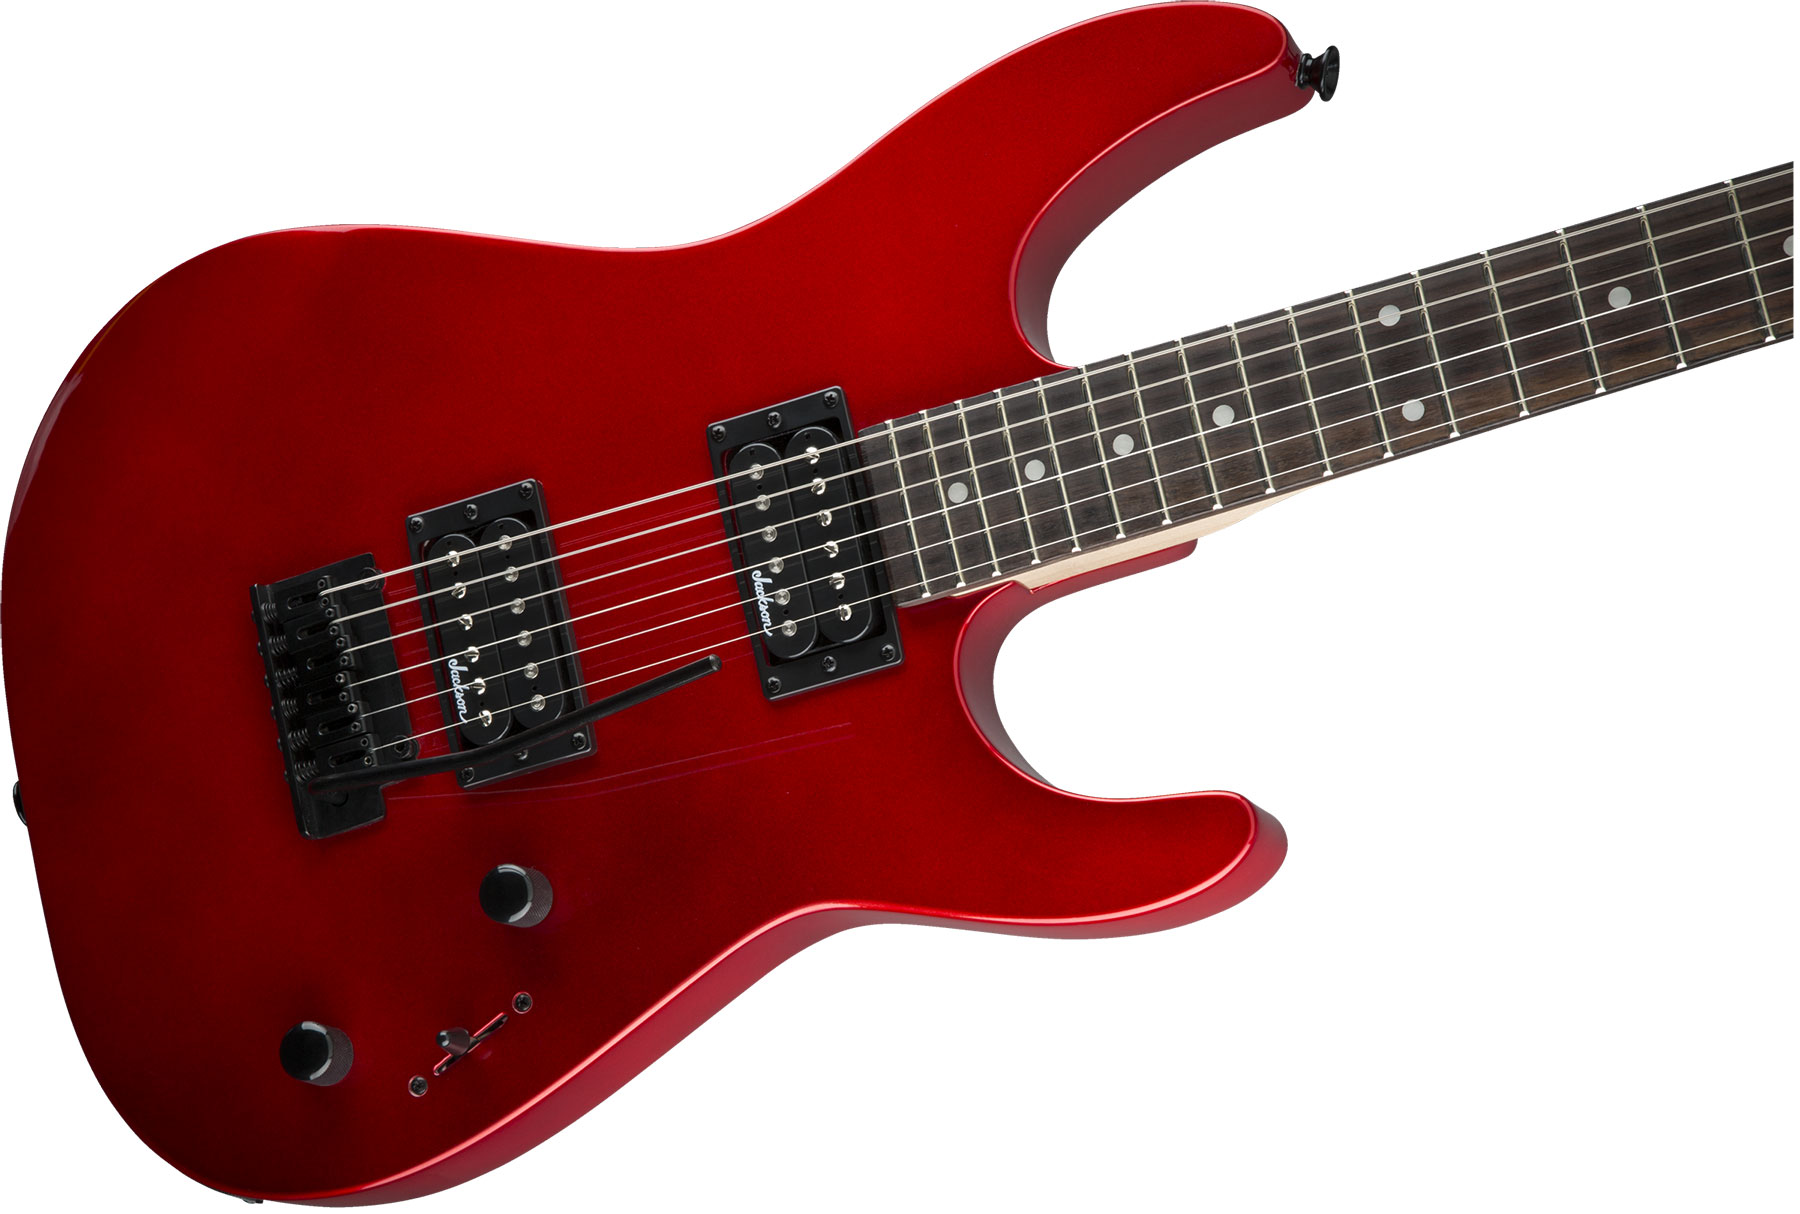 Jackson Dinky Js11 2h Trem Ama - Metallic Red - Str shape electric guitar - Variation 2